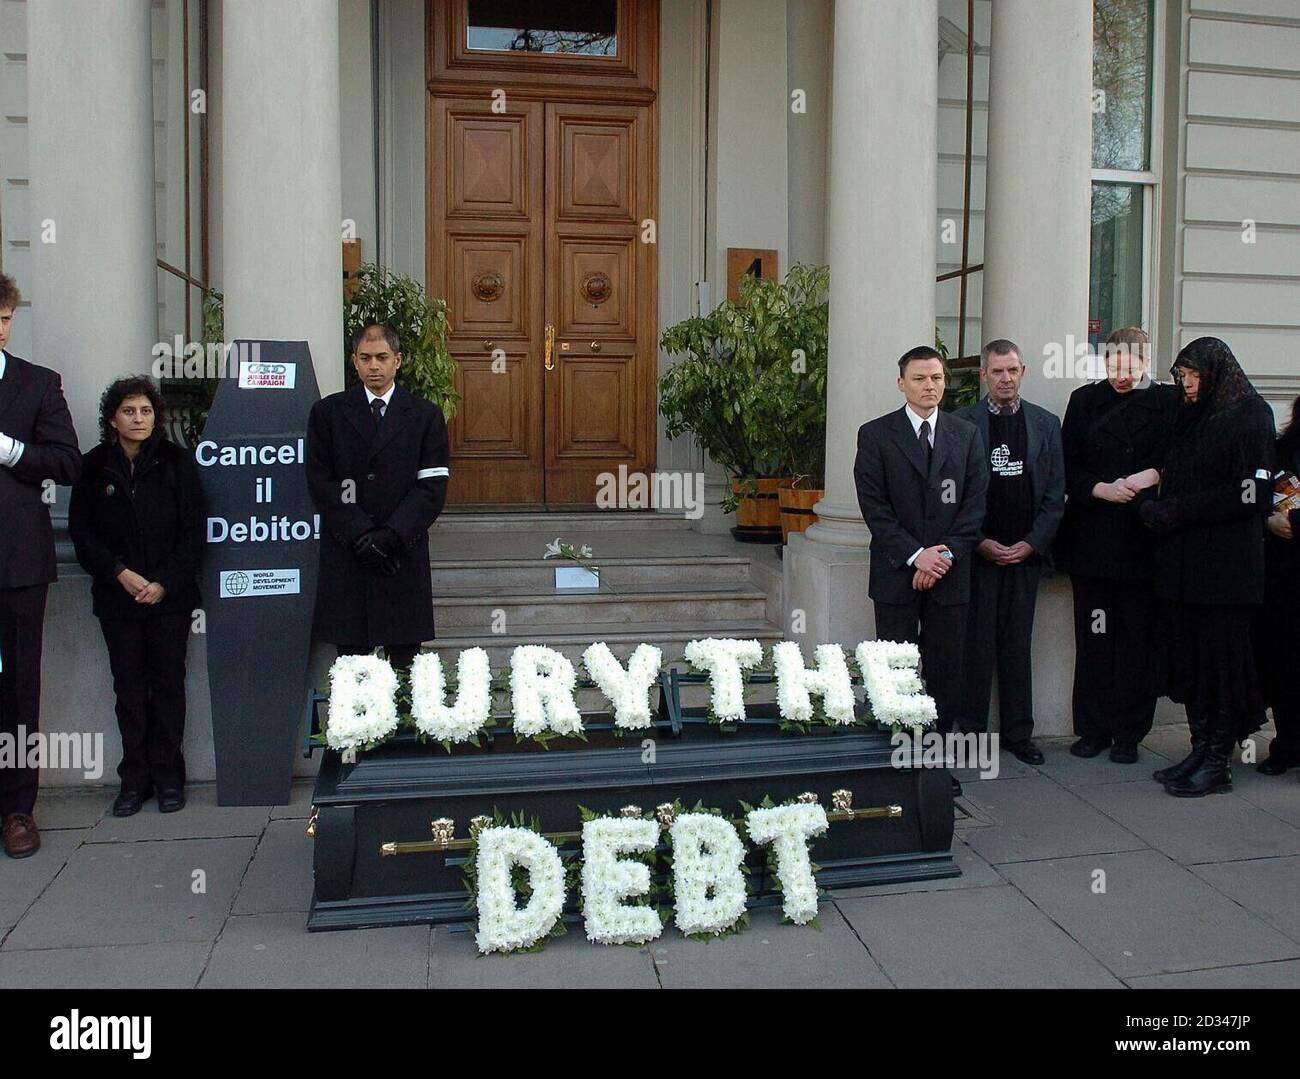 Una procesión funeraria de "enterrar la deuda, no los muertos" fuera de la embajada italiana, ya que inicia una gira por las embajadas del G7 en la capital exigiendo que los países ricos cancelen las deudas con los países empobrecidos. Foto de stock